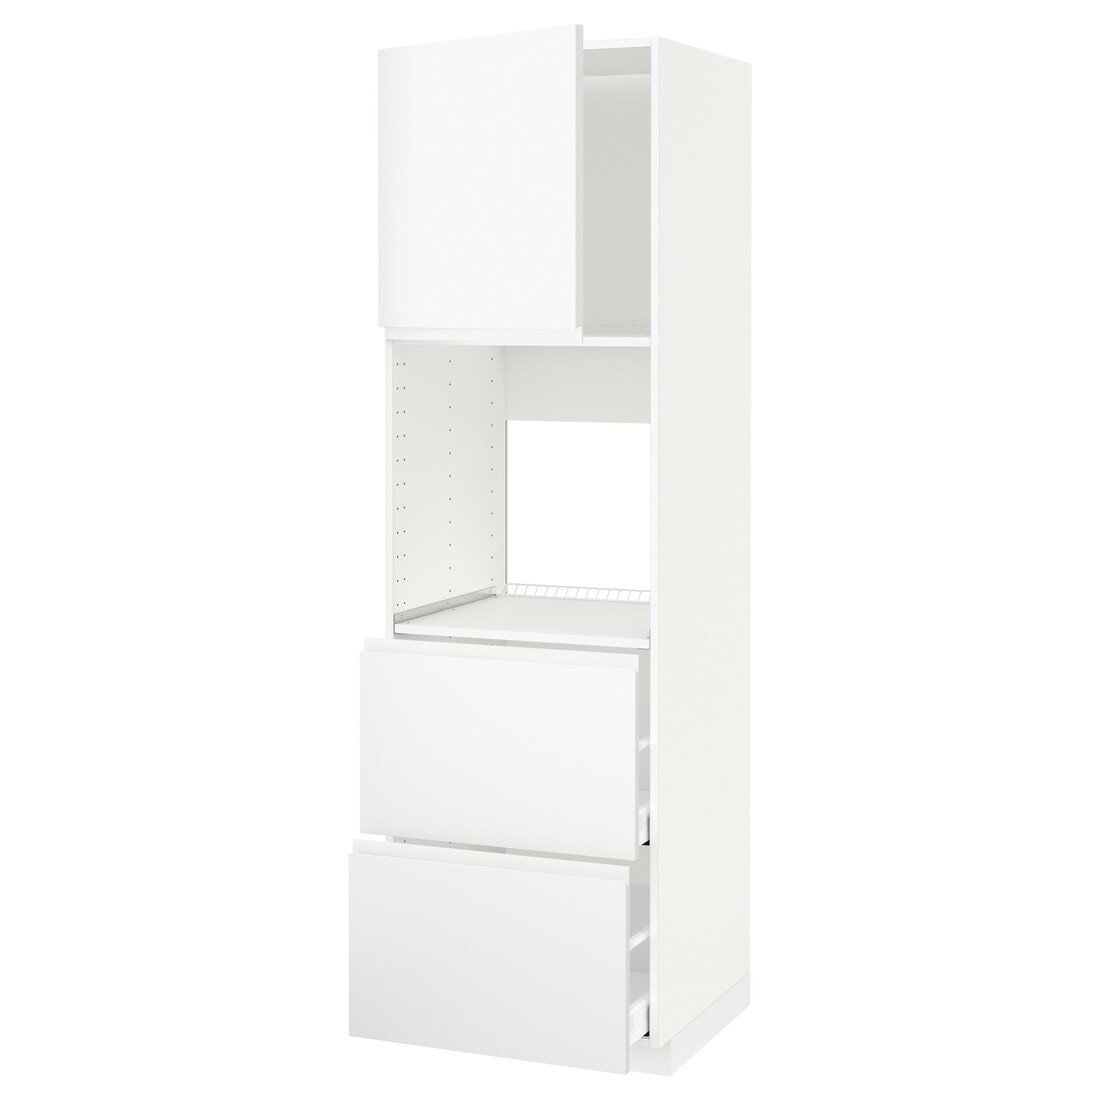 METOD МЕТОД / MAXIMERA МАКСИМЕРА Высокий шкаф для духовки с дверцей / ящиками, белый / Voxtorp матовый белый, 60x60x200 см